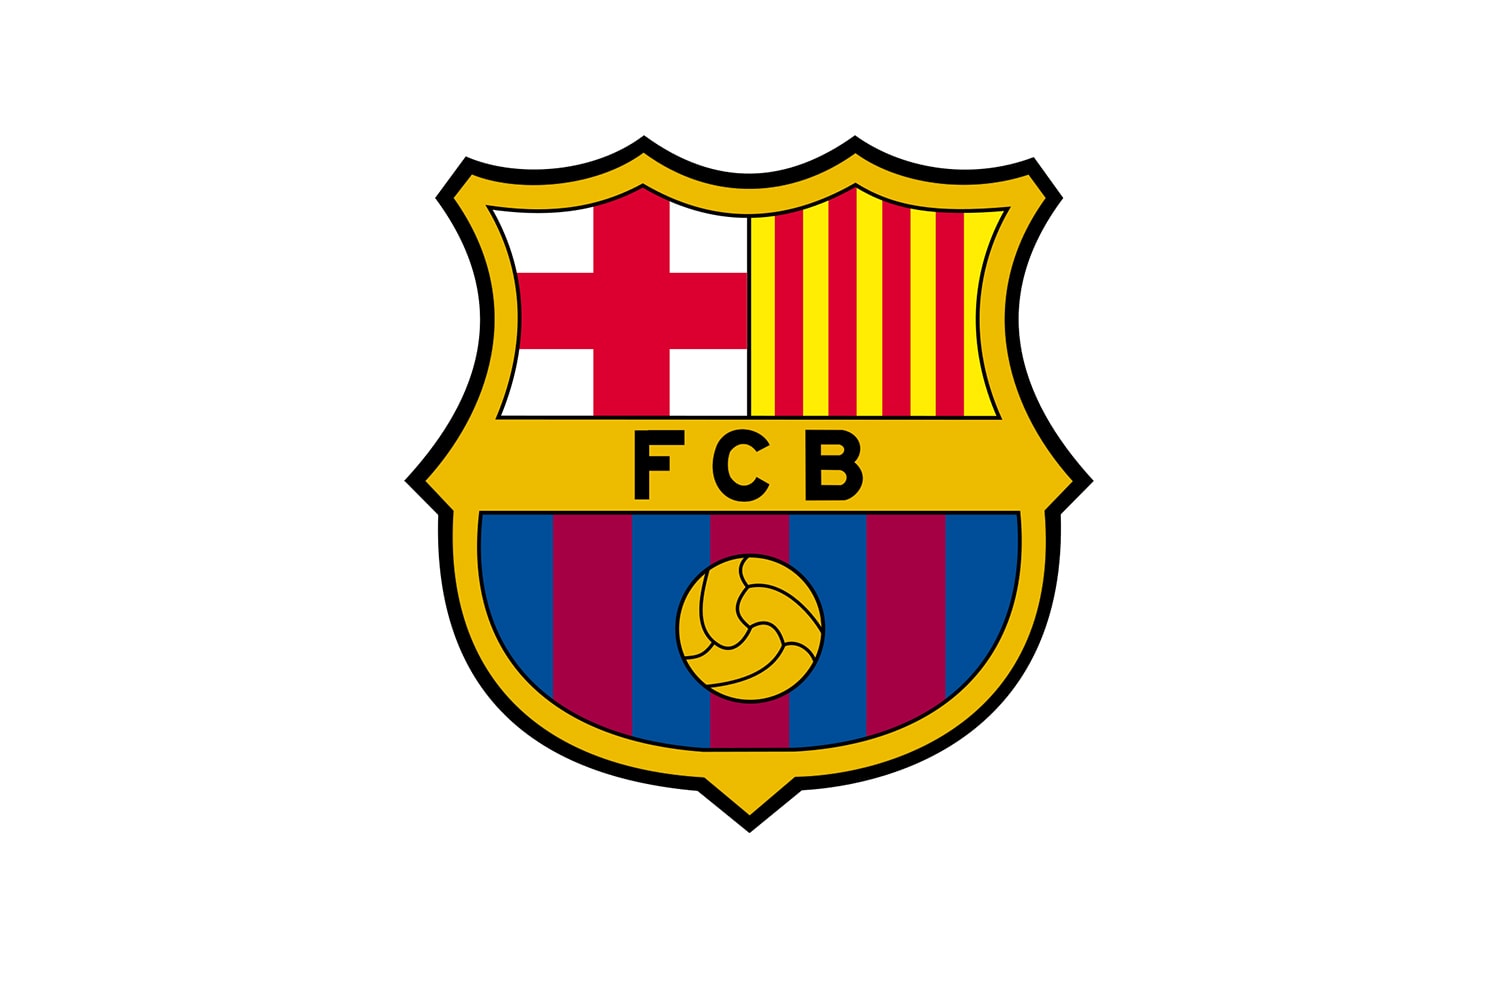 16년 만에 엠블럼 디자인을 바꾼 FC 바르셀로나